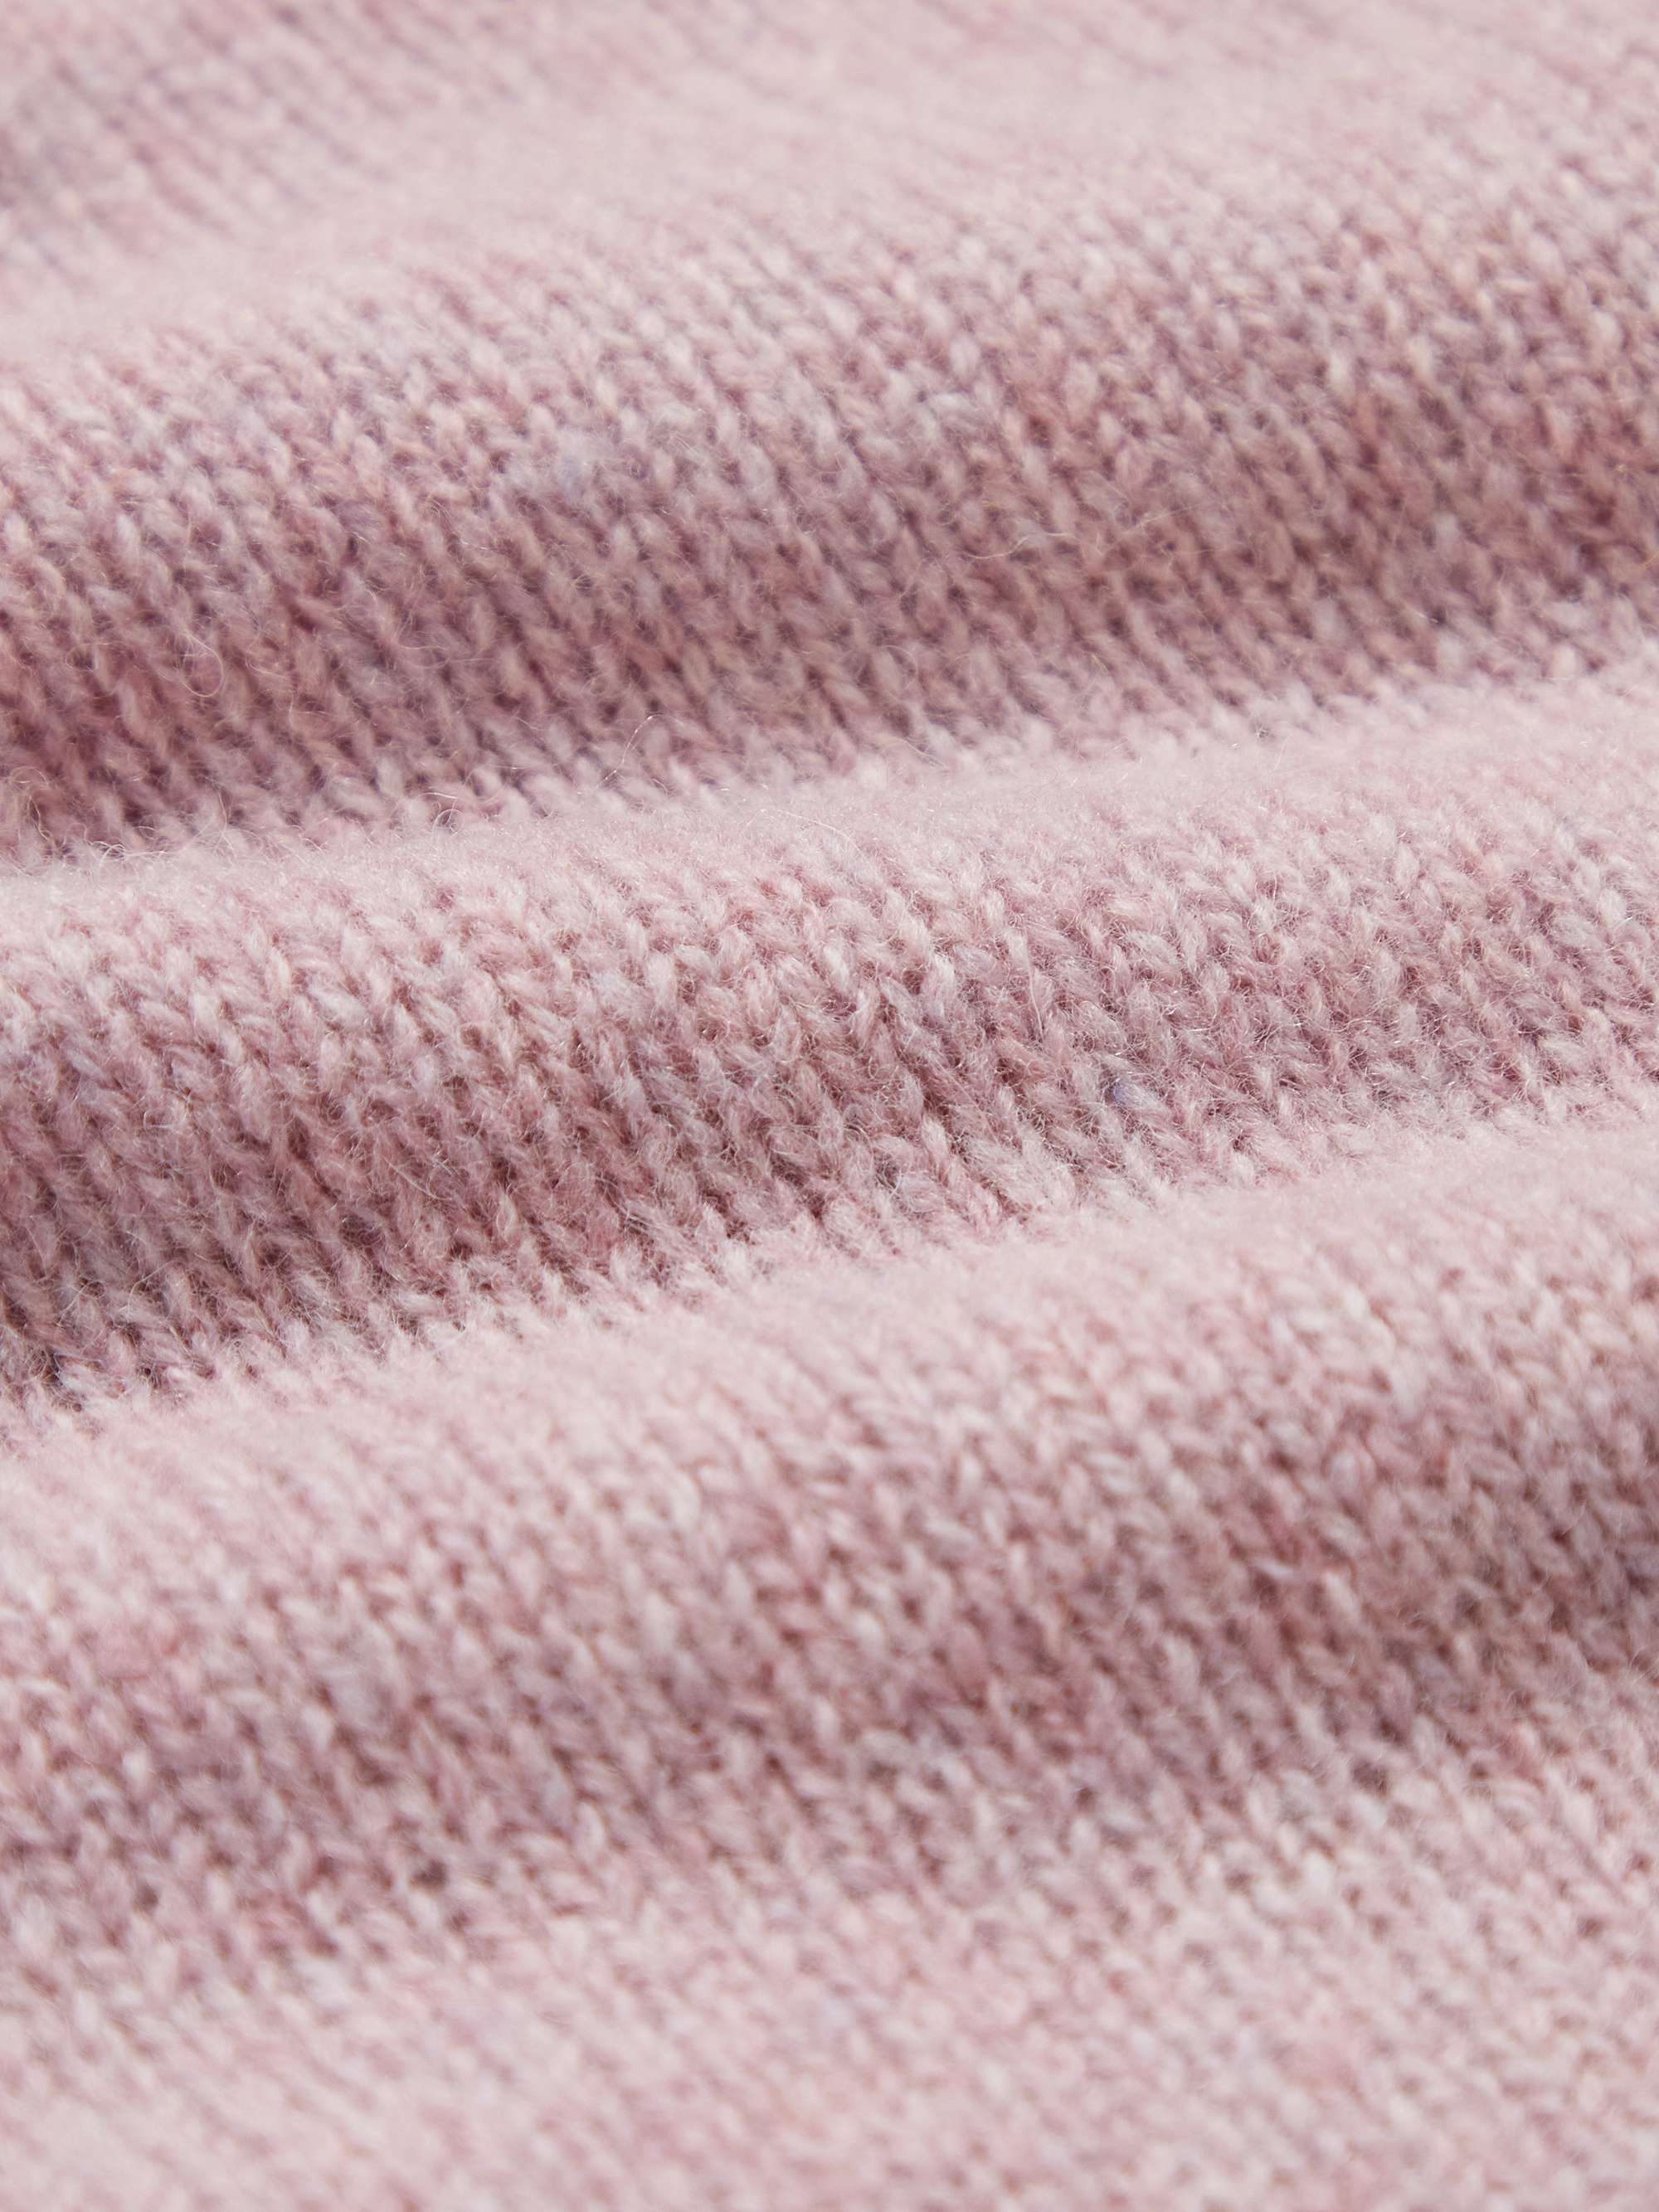 KINGSMAN Shetland Virgin Wool Sweater